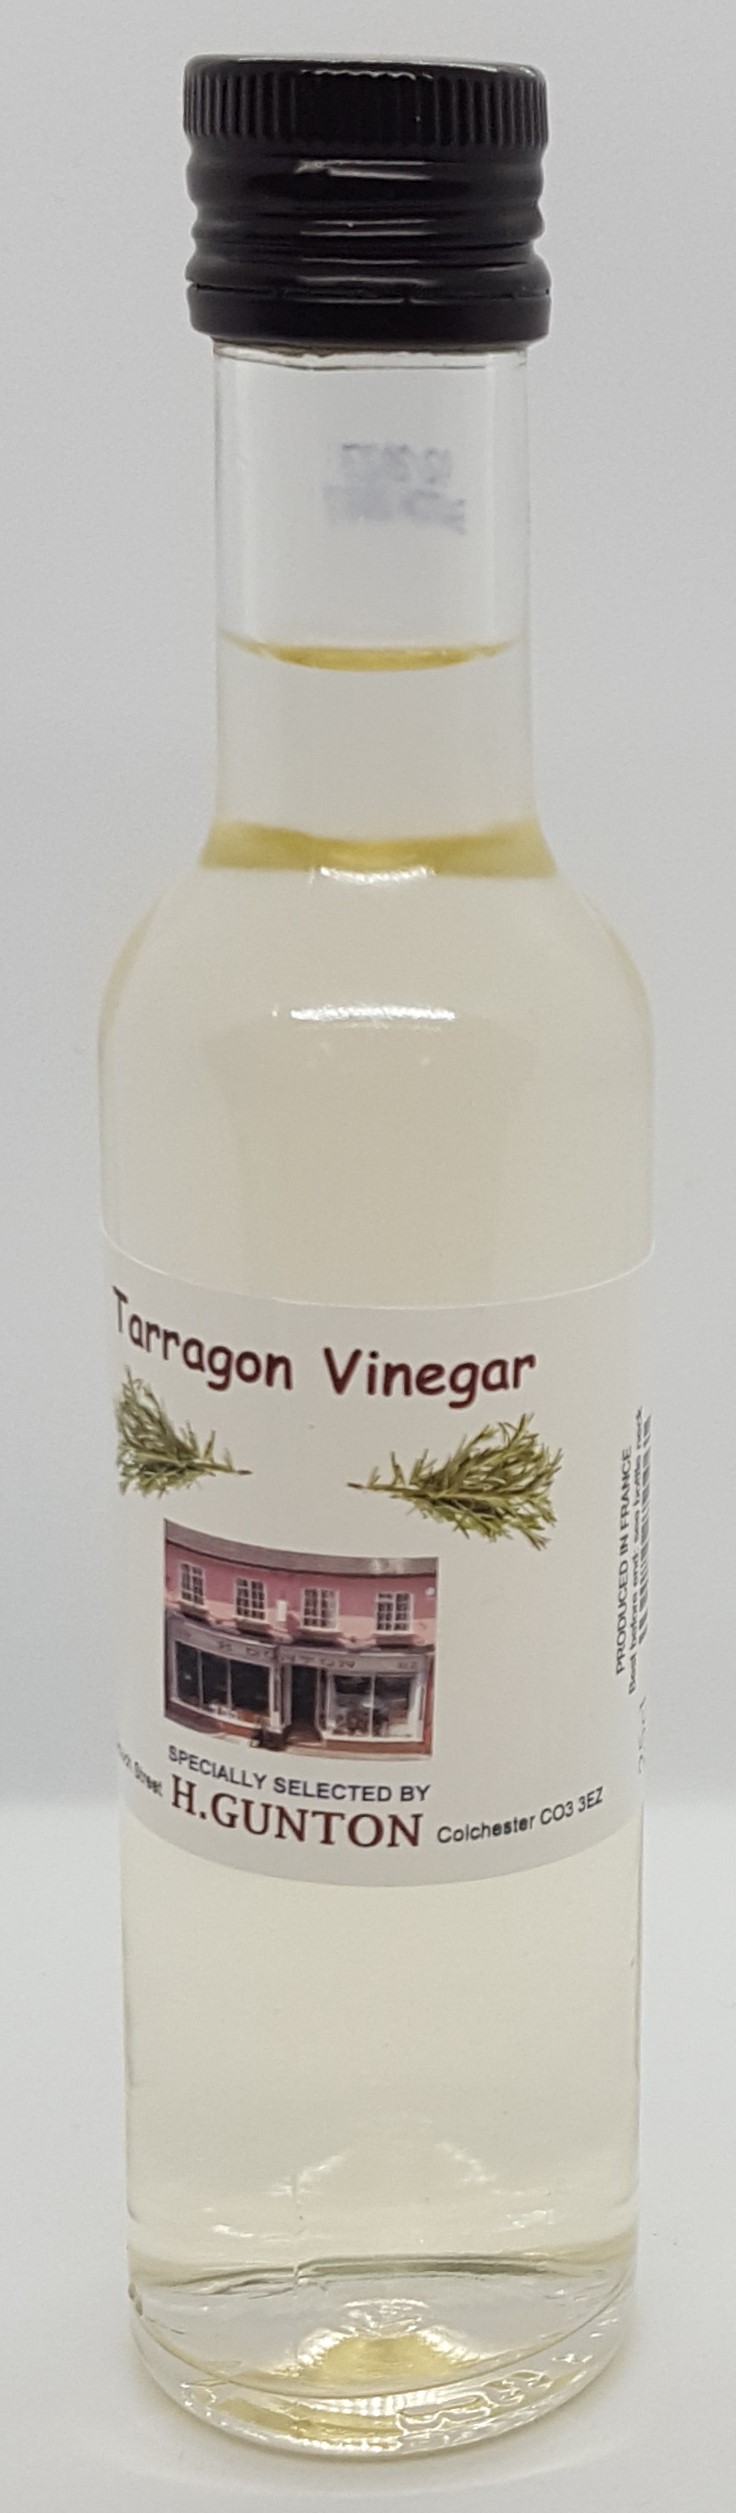 Guntons Tarragon Vinegar